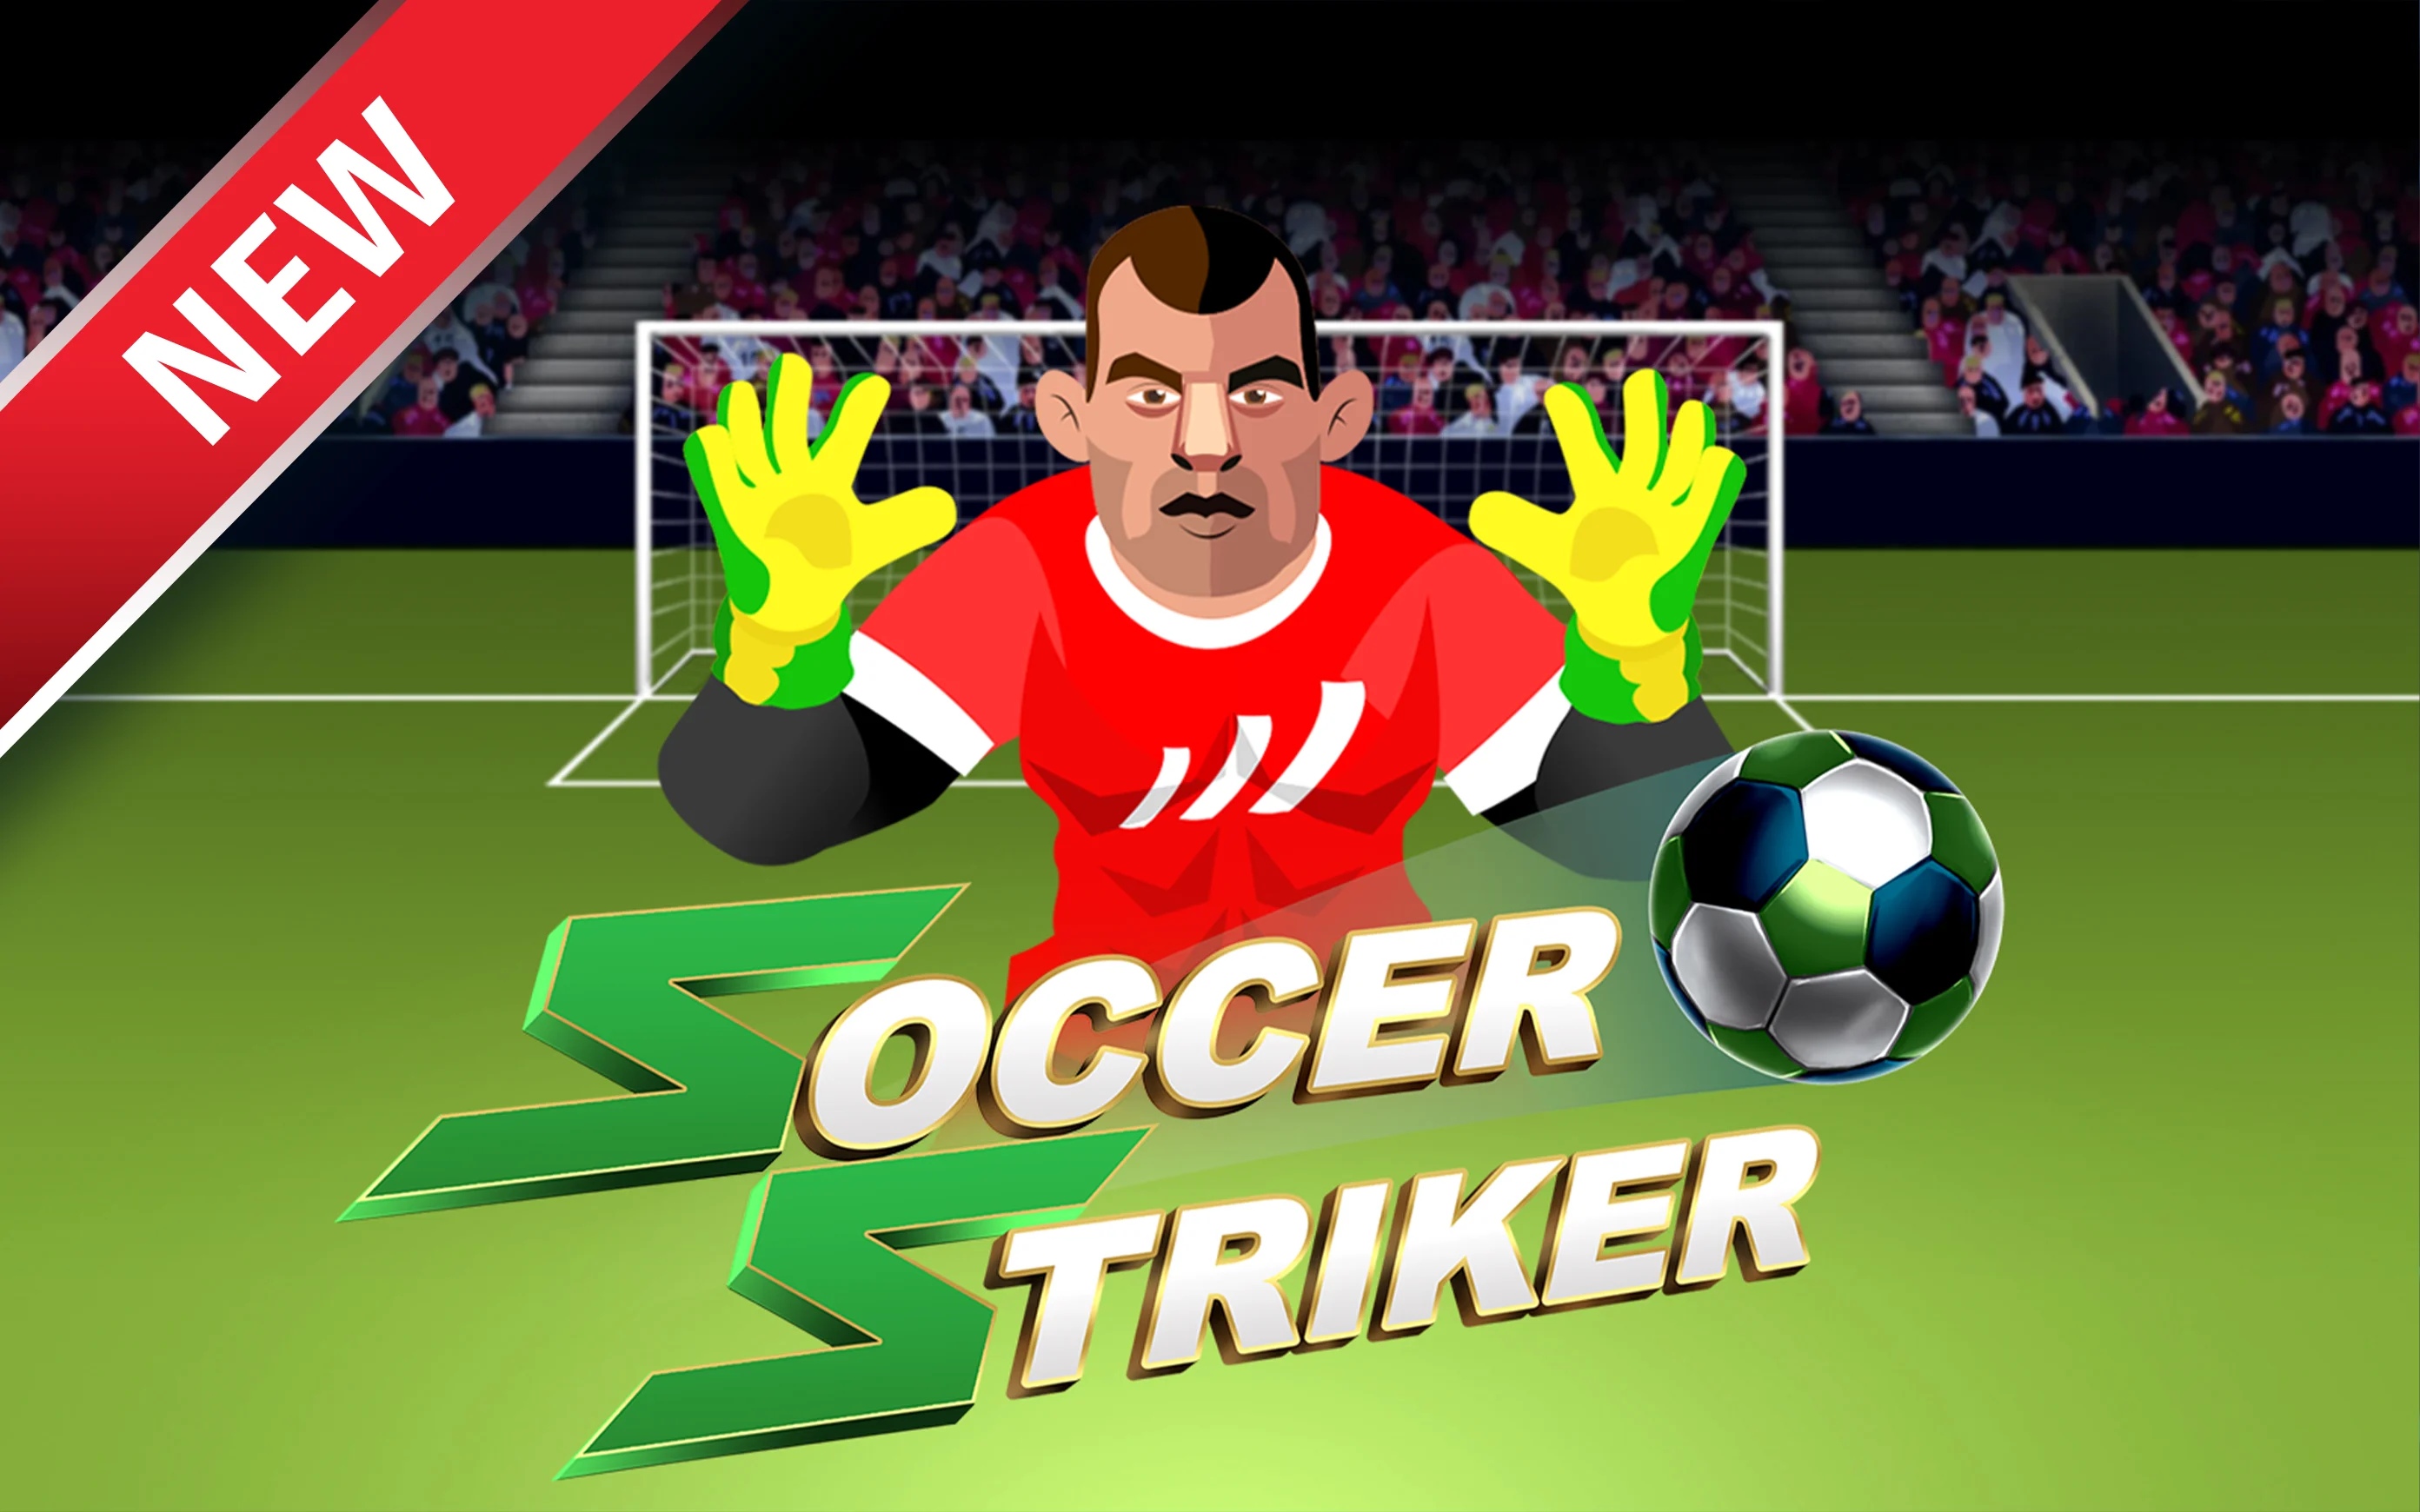 Spil Soccer Striker på Starcasino.be online kasino
